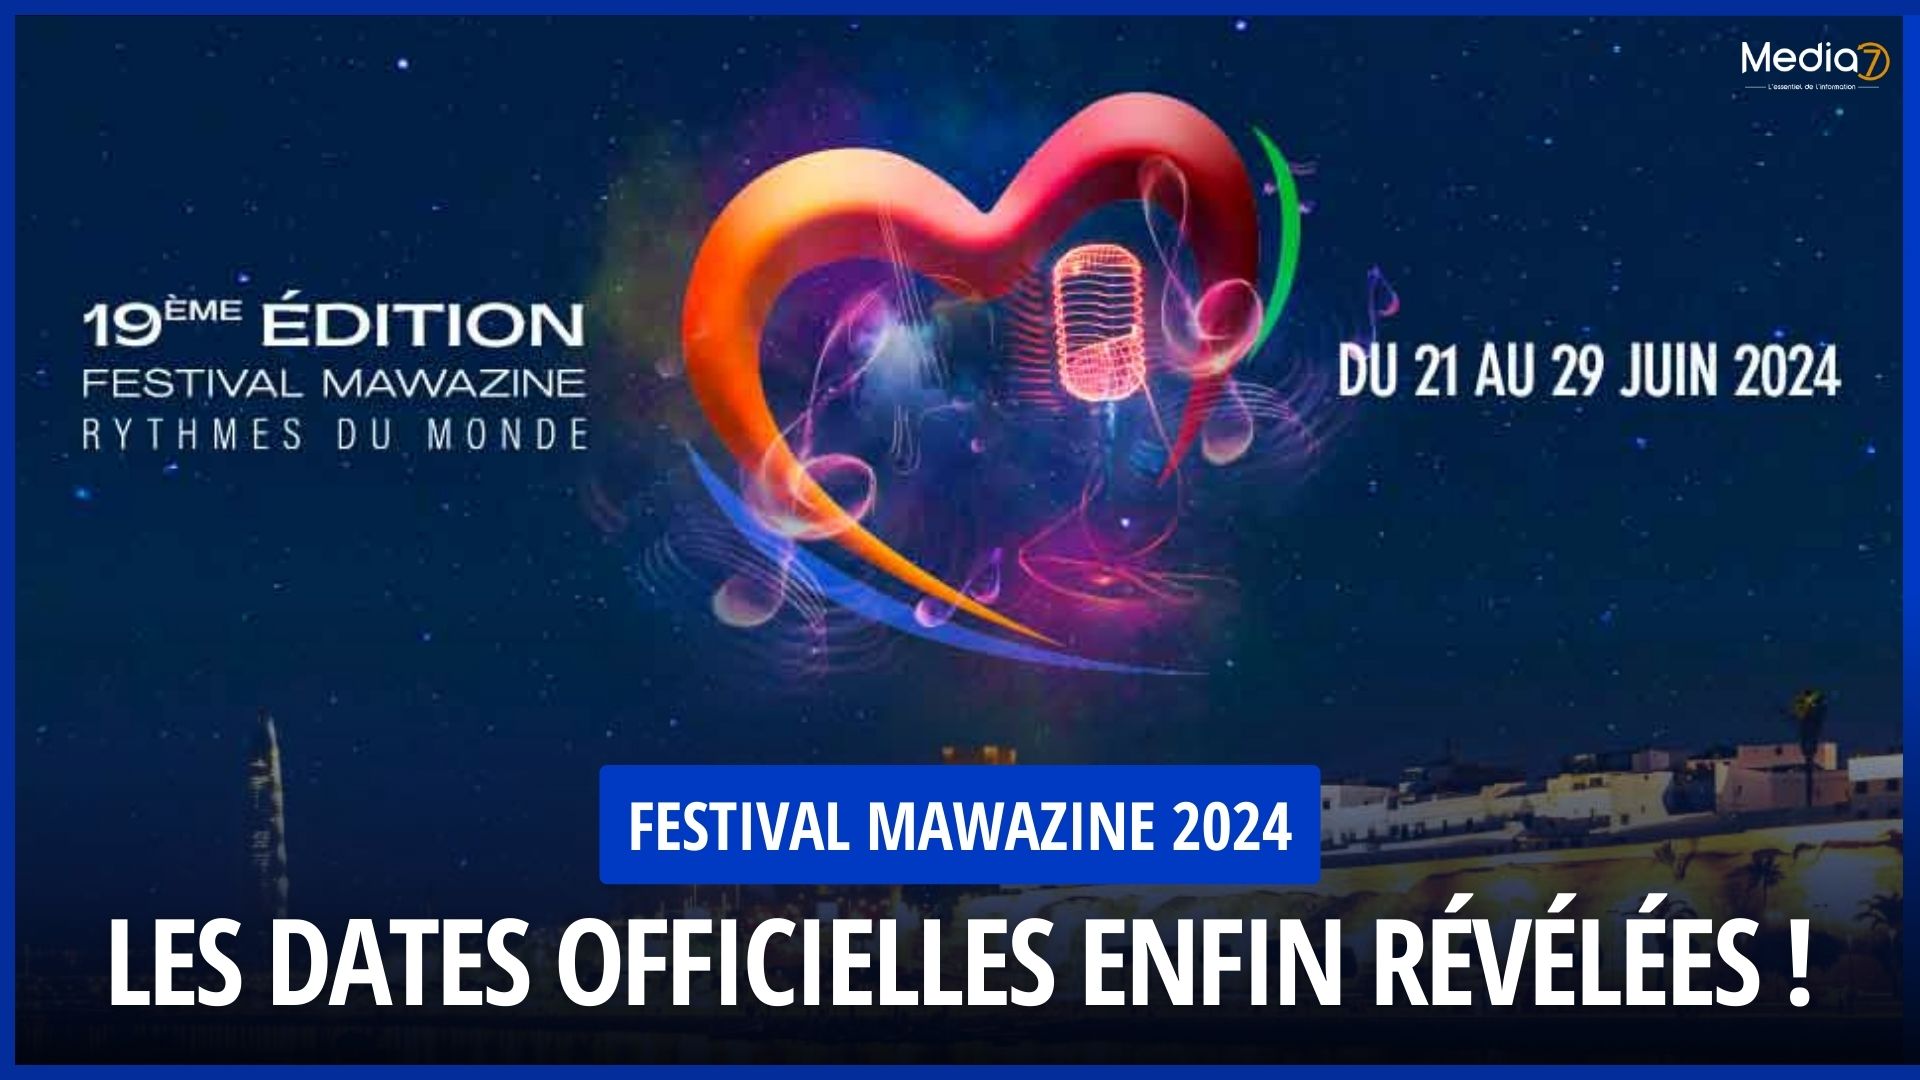 Festival Mawazine 2024 Les Dates Officielles enfin Révélées ! Media7